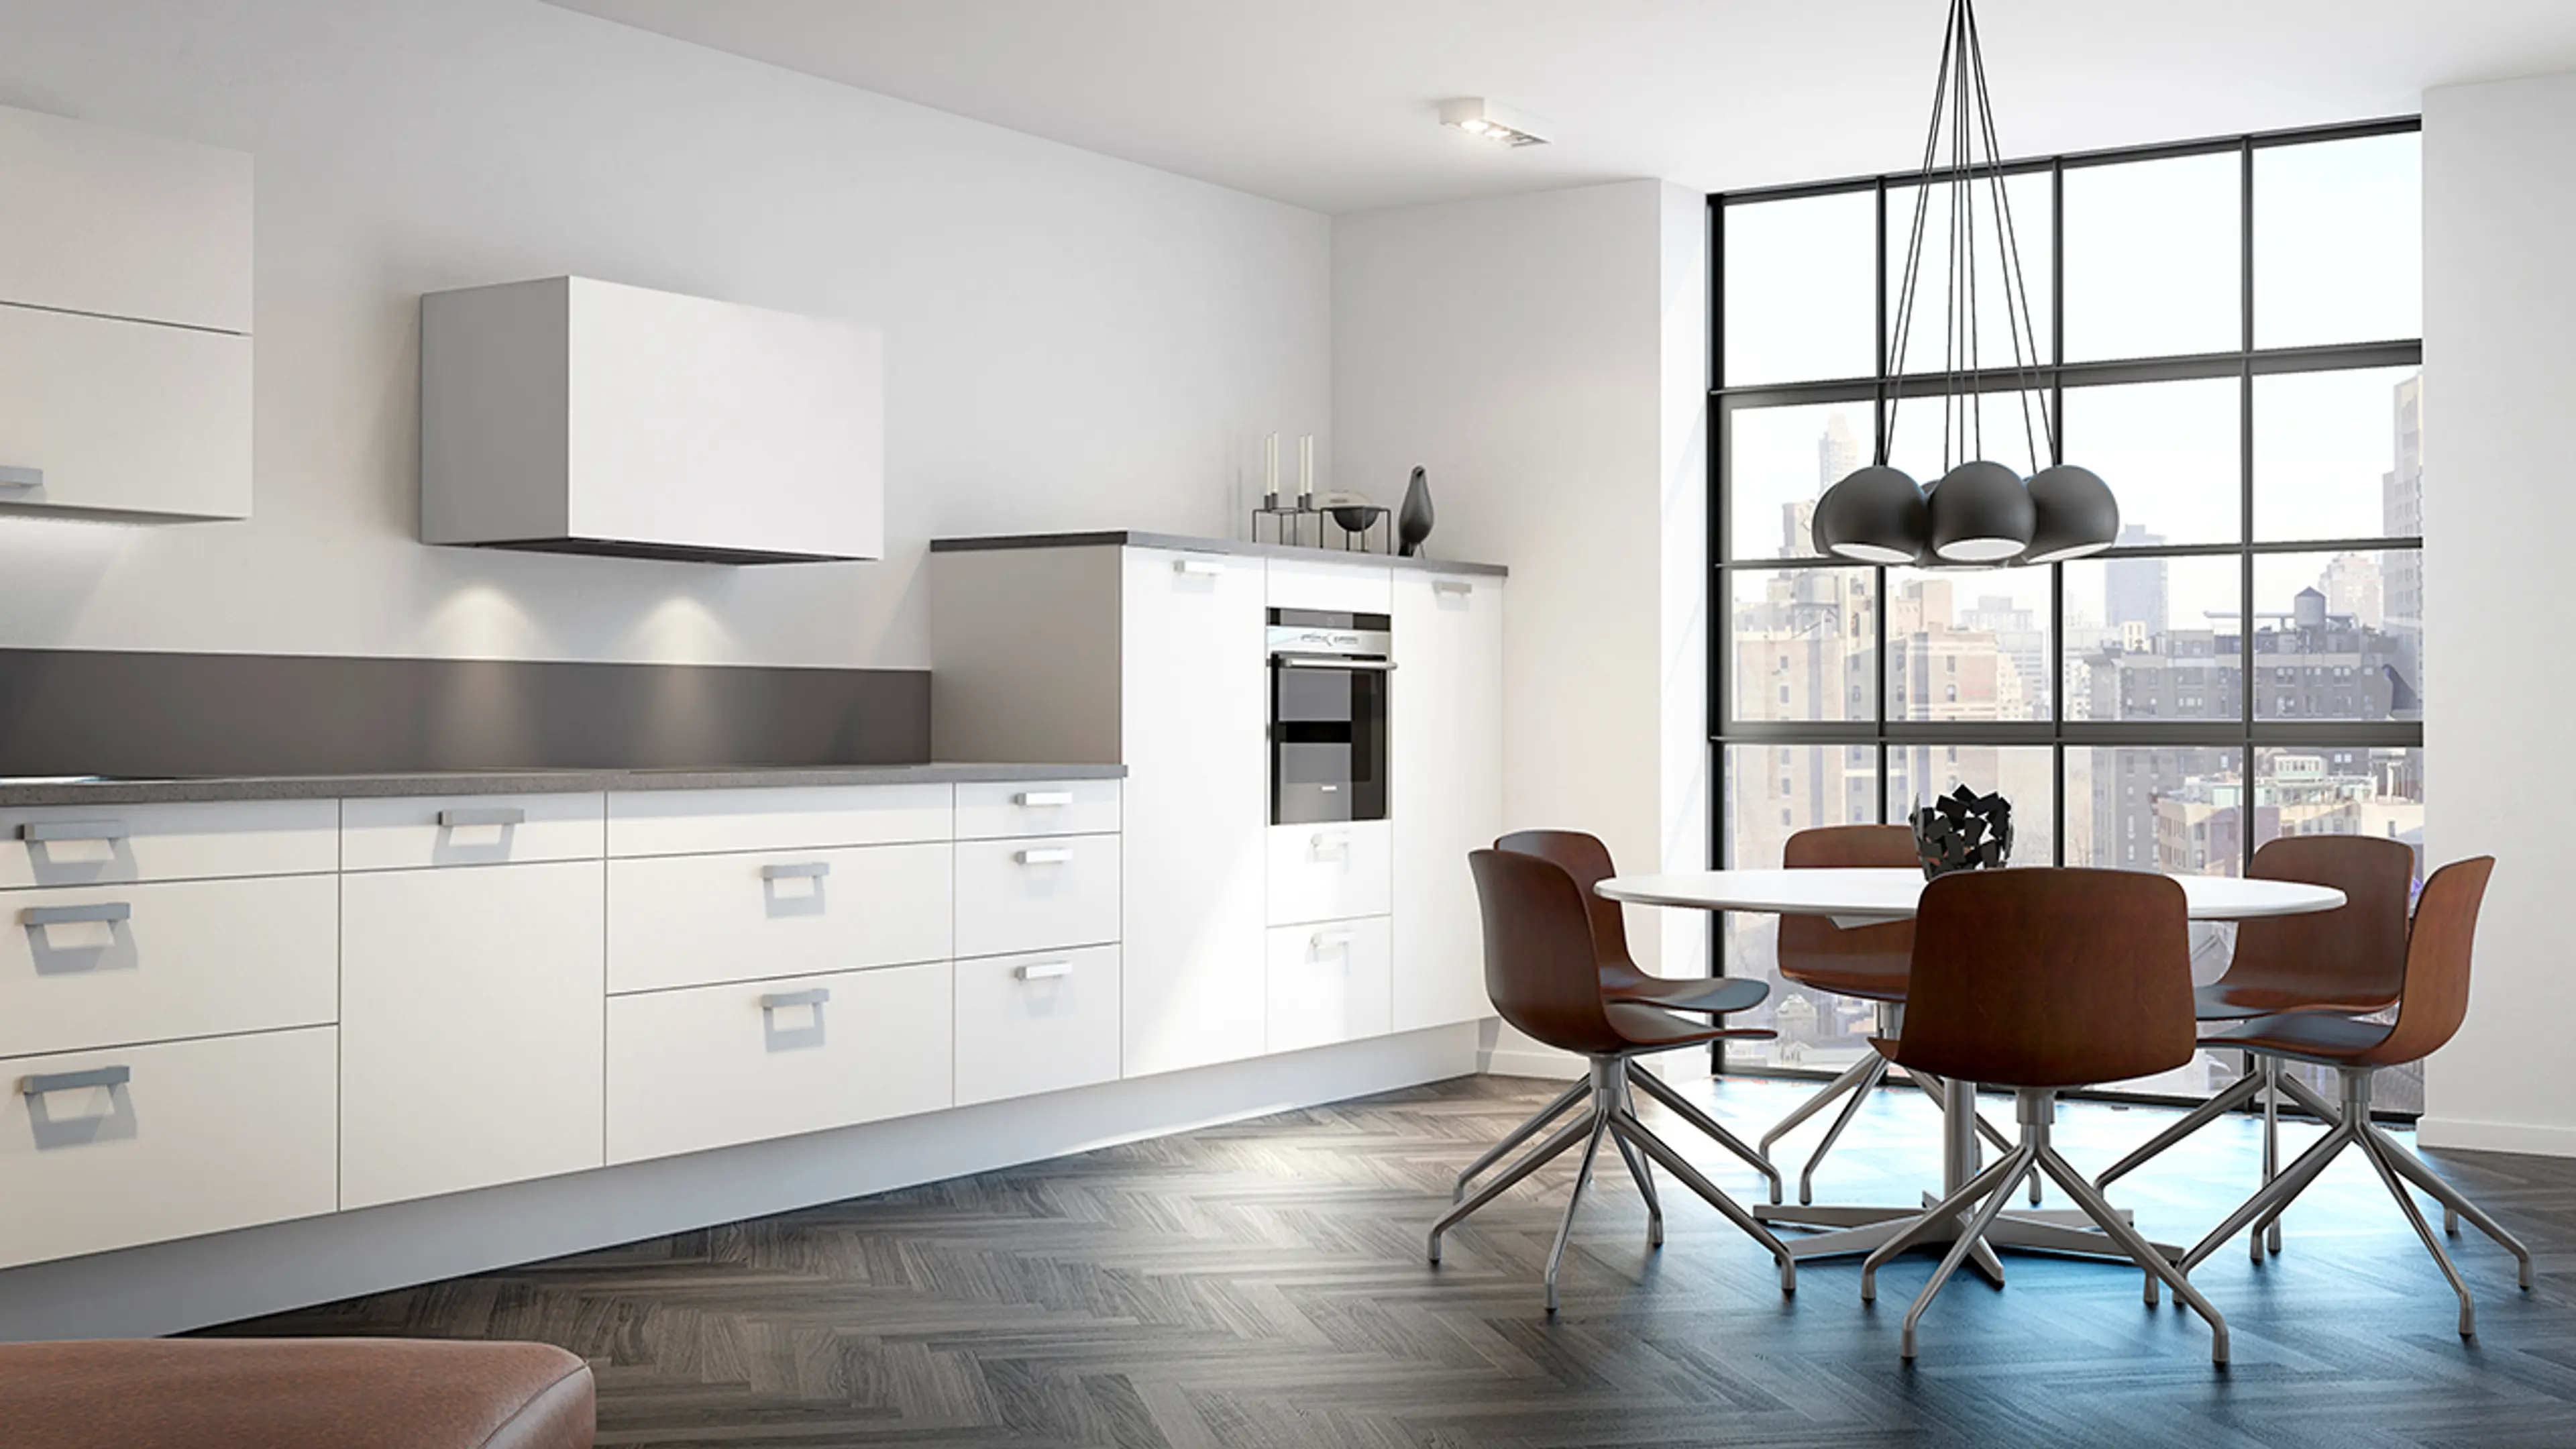 Hvit kjøkkenhette med RørosHetta Sense-teknologi i hvitt kjøkken med mønstergulv.